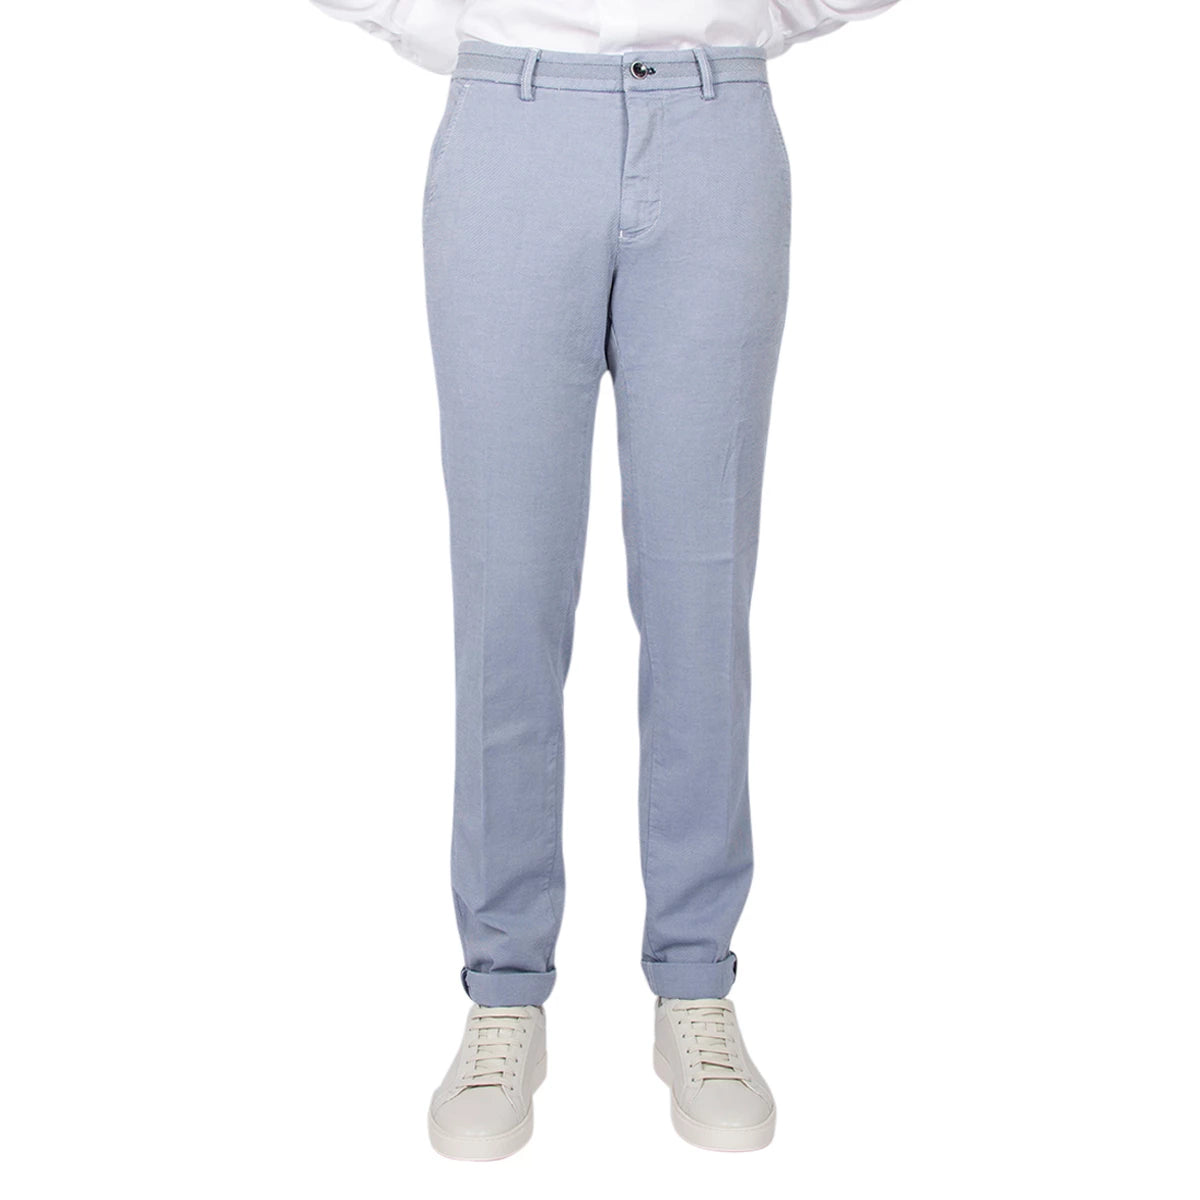 Mason's Pantalon lichtblauw | Torino